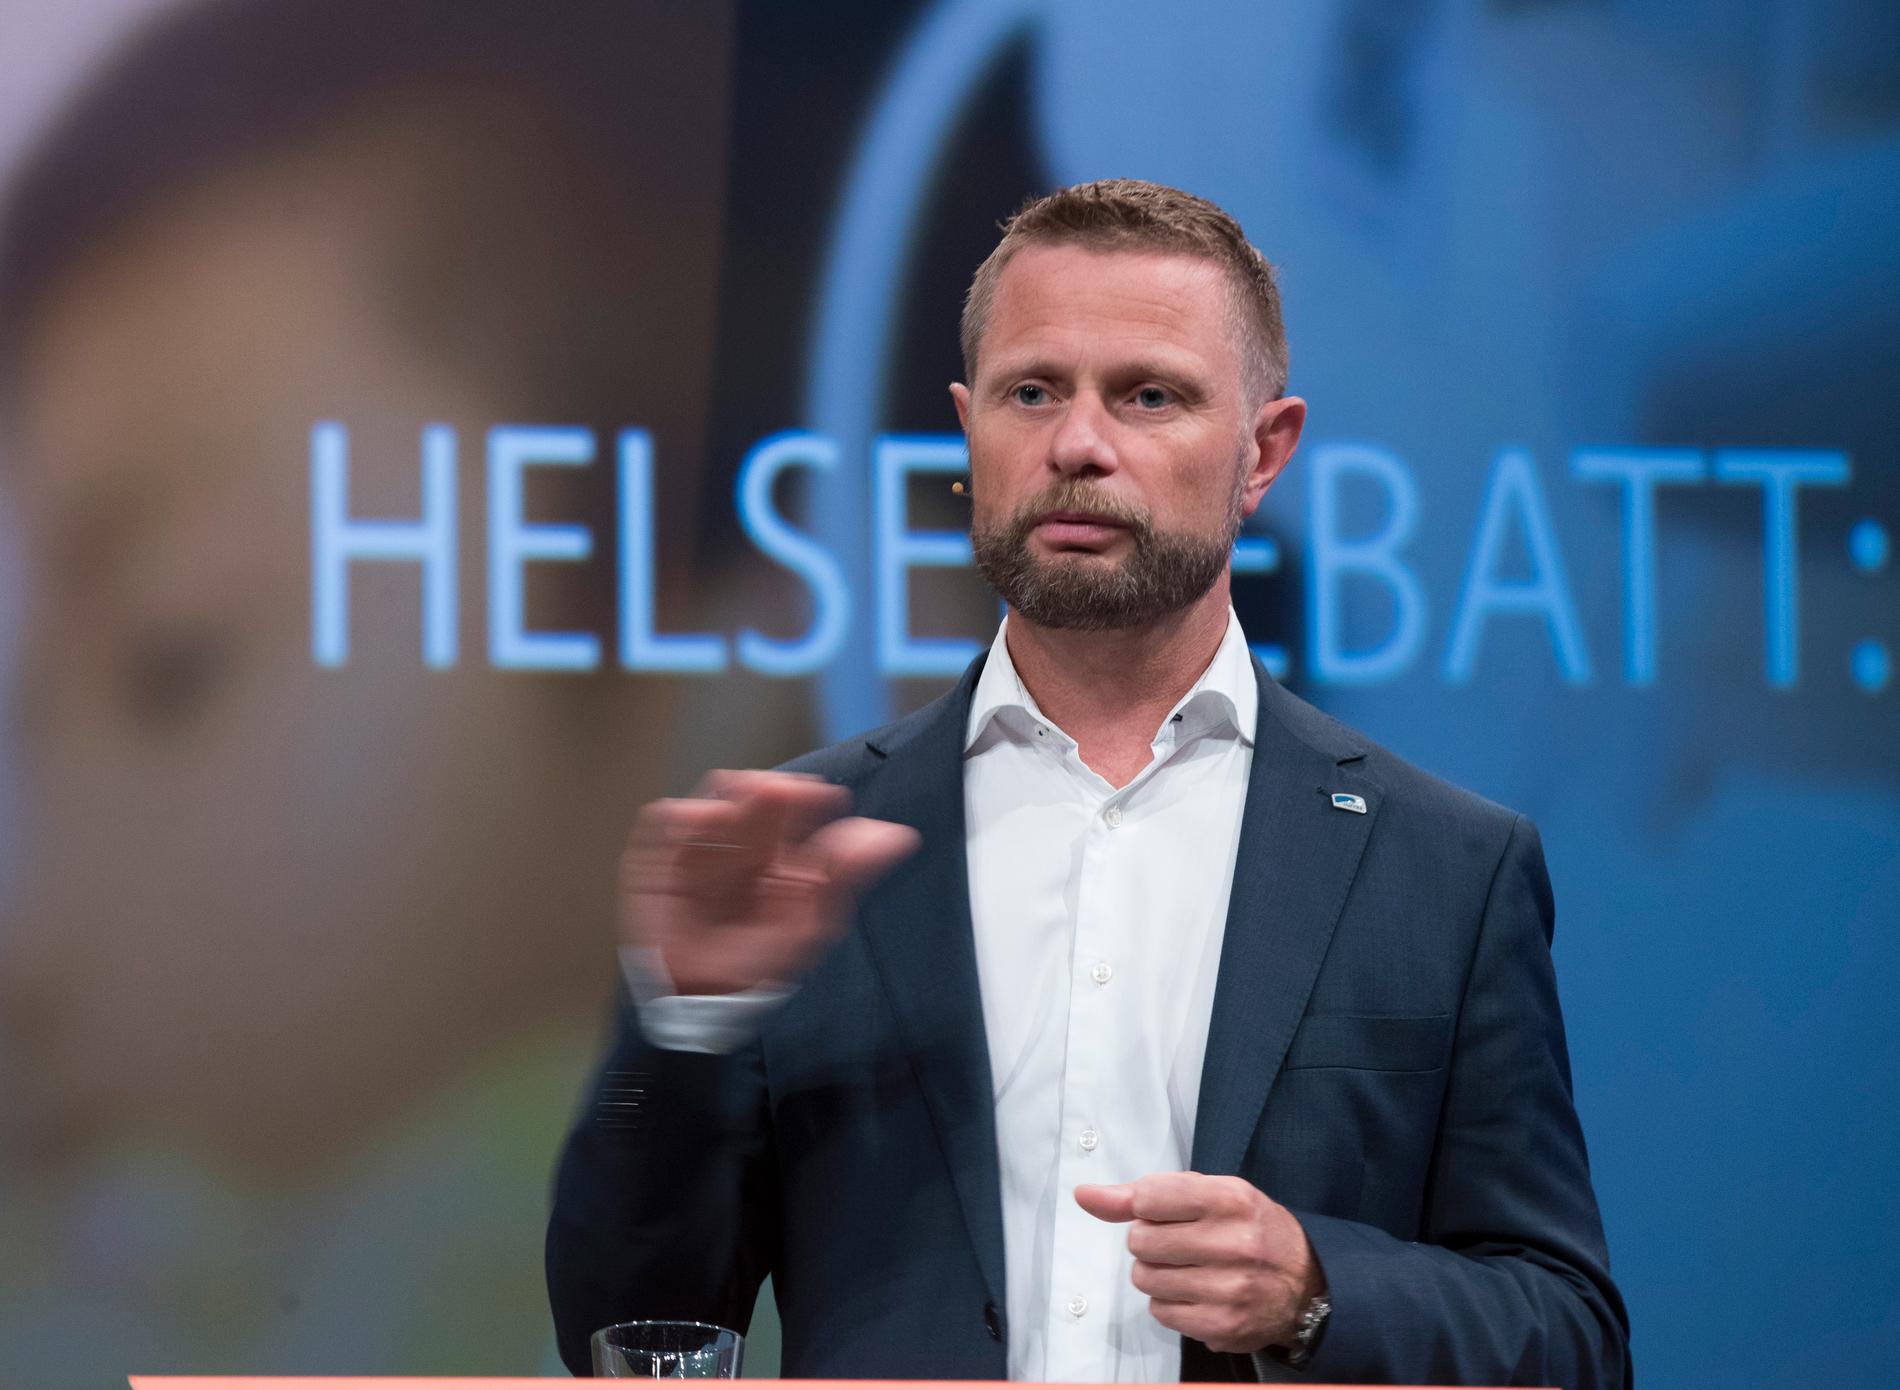 FYLKESMANN: Helseminister Bent Høie (H) blir ny fylkesmann i Rogaland fra 2021. 